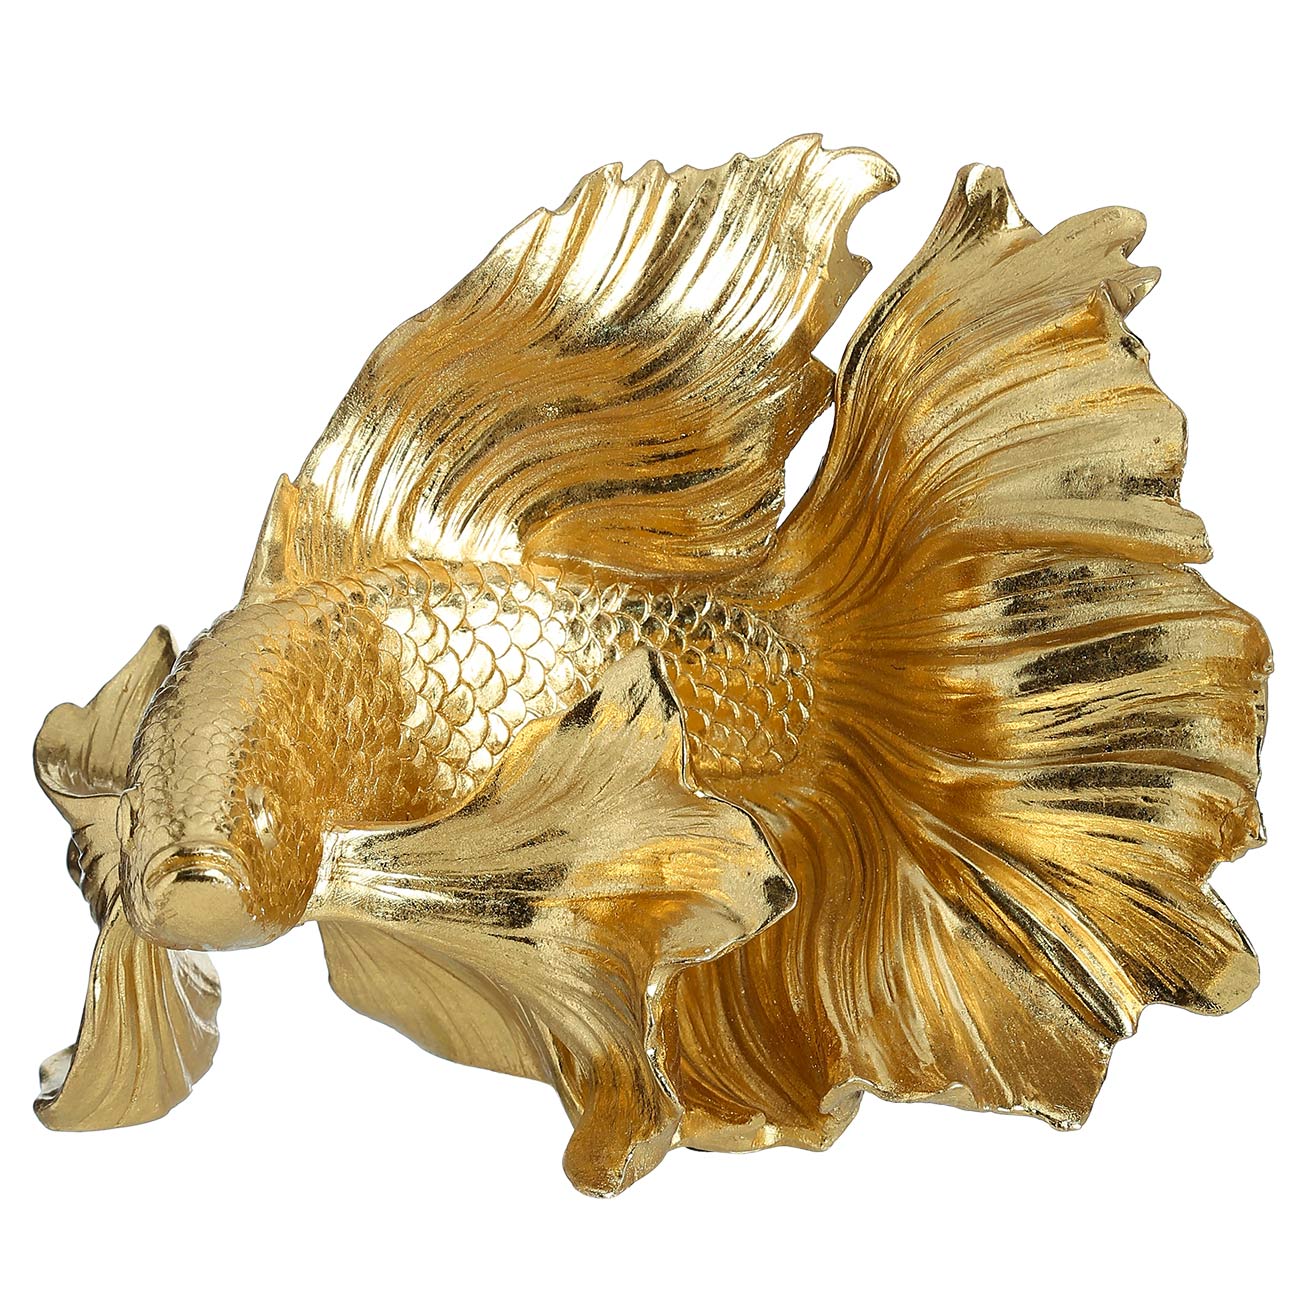 Figurine, 20 cm, polyresin, golden, Fish, Goldfish изображение № 2